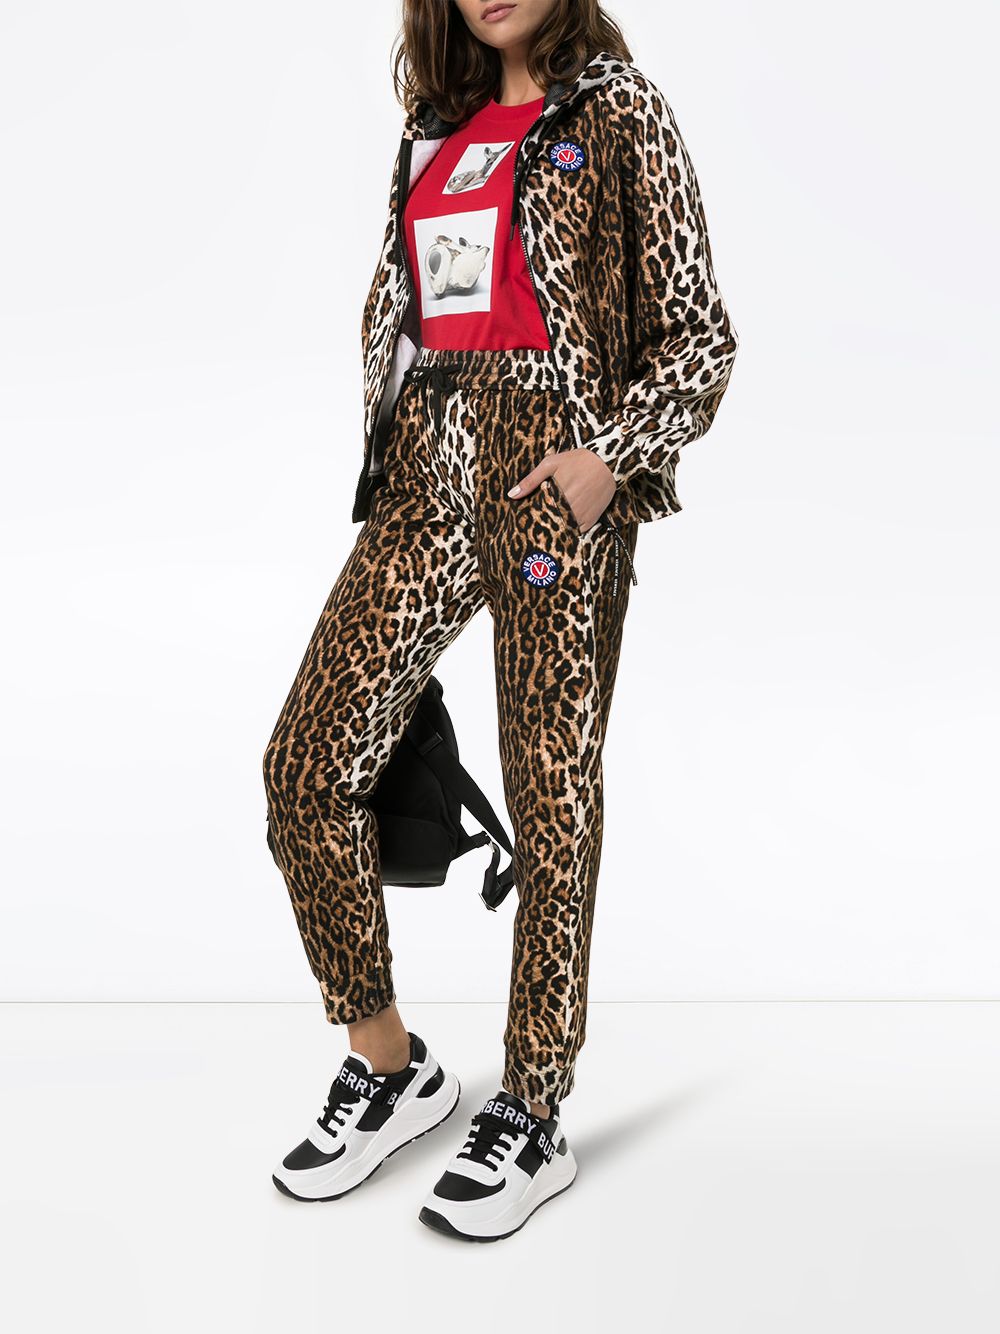 фото Versace худи с леопардовым принтом